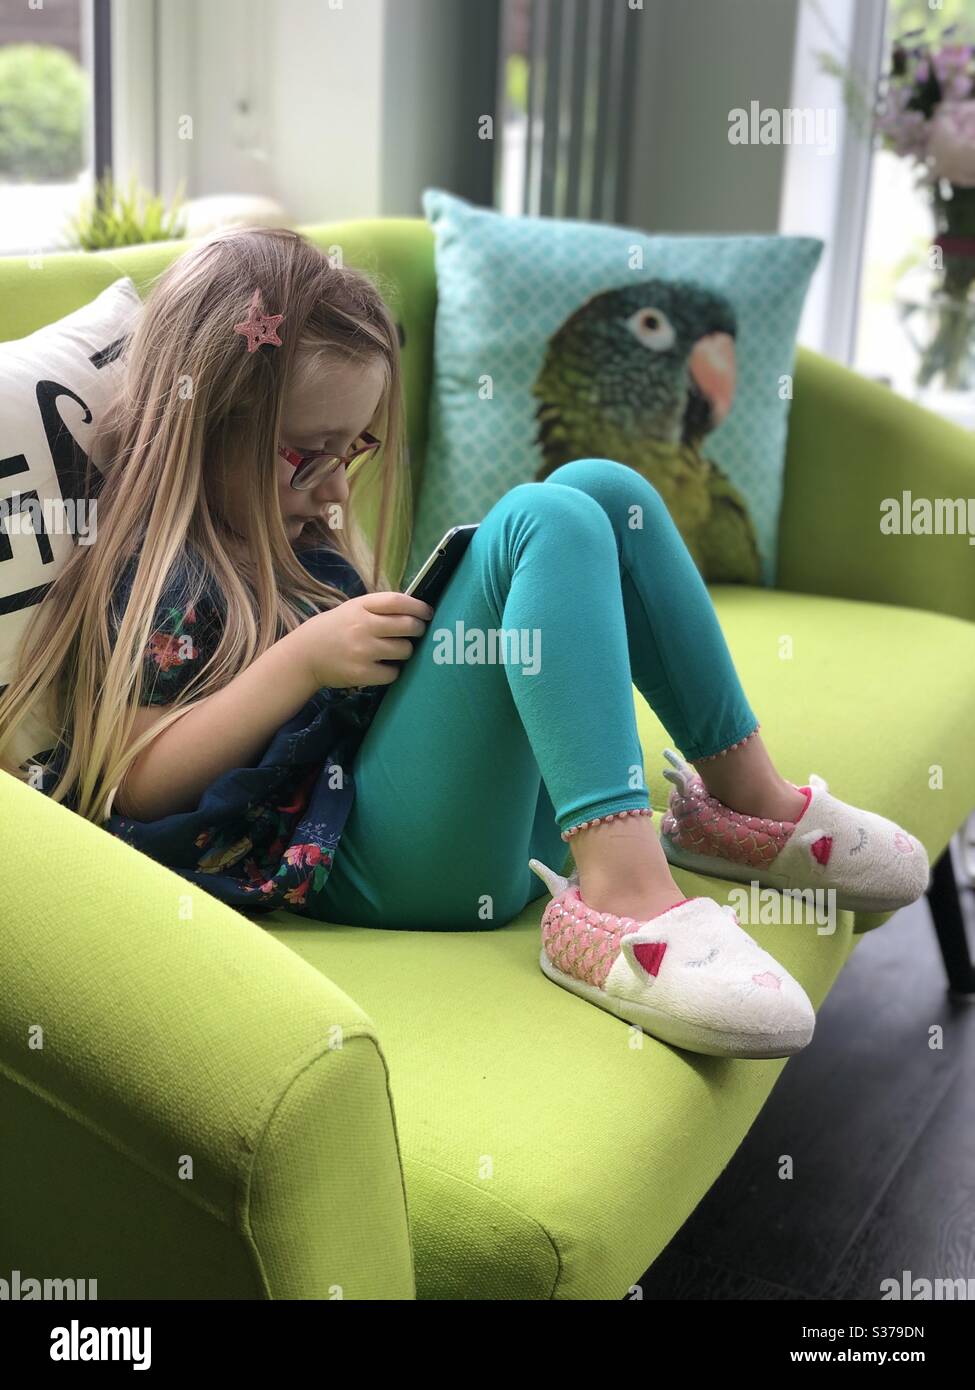 Kleines Mädchen auf buntem Sofa sitzen und mit digitalem Tablet spielen. Stockfoto